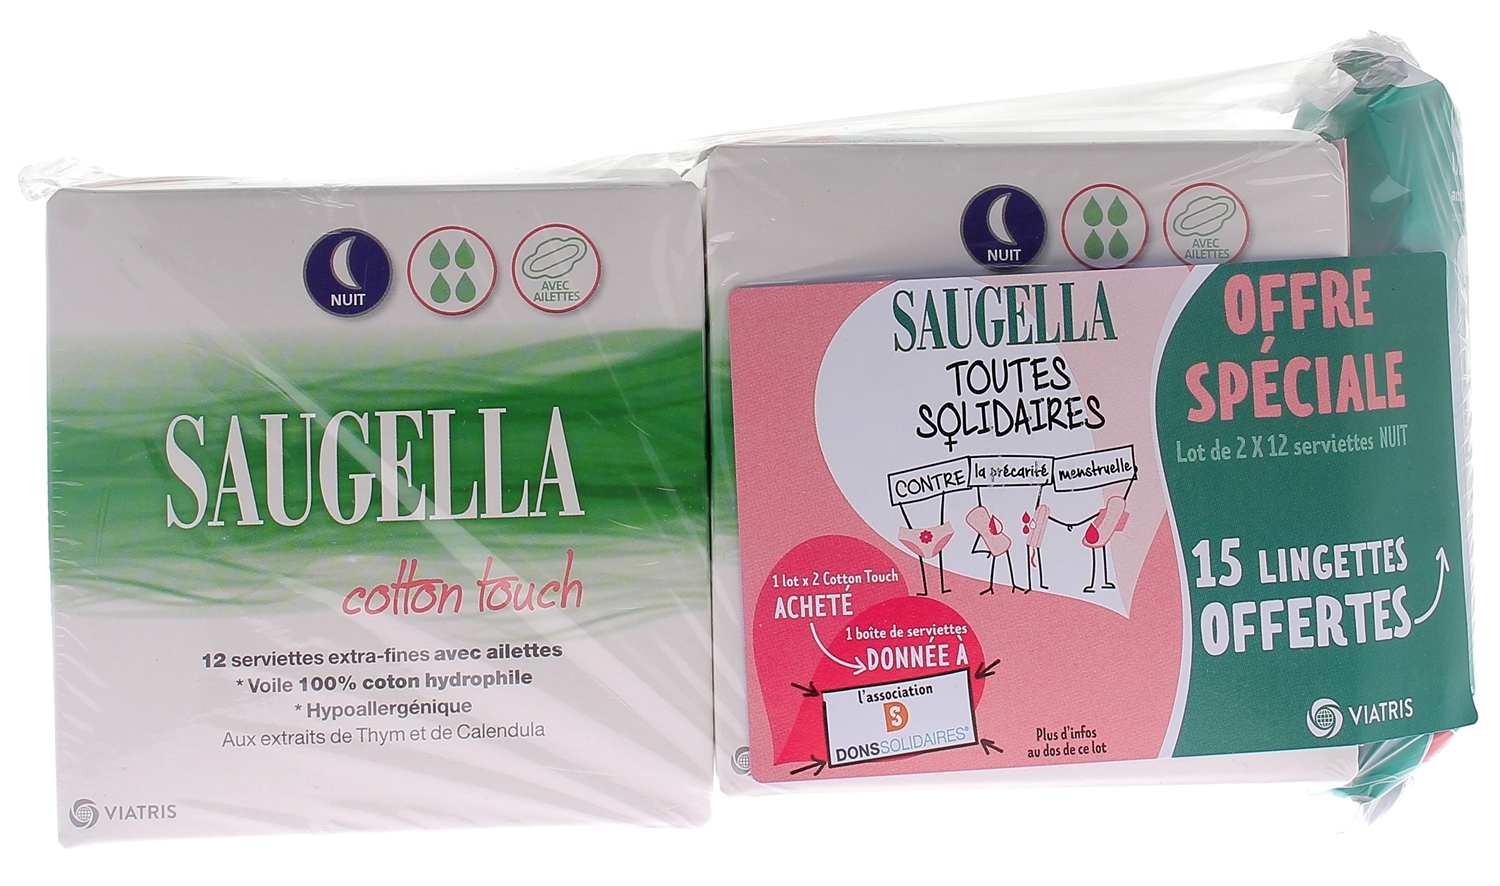 Cotton touch serviette extra-fine avec ailettes nuit Saugella - lot de 2 boîtes de 12 serviettes + 15 lingettes offertes